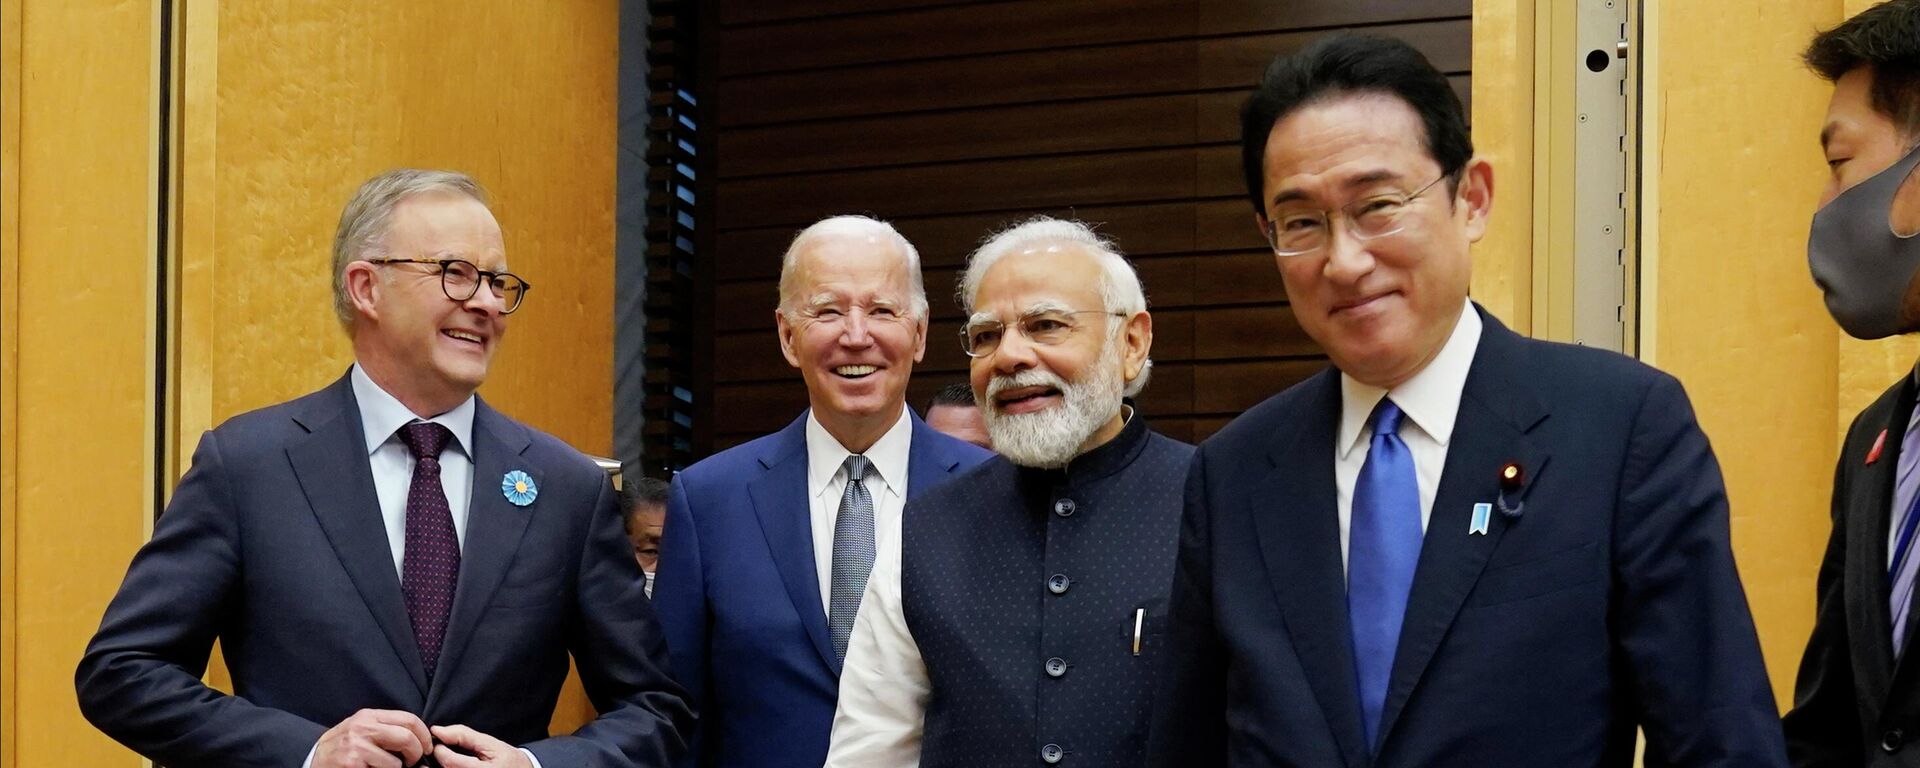 Primeiro-ministro da Austrália, Anthony Albanese, o presidente dos EUA, Joe Biden, o premiê do Japão, Fumio Kishida, e o premiê da Índia, Narendra Modi, durante cúpula do Quad em Tóquio, 24 de maio de 2022 - Sputnik Brasil, 1920, 24.05.2022